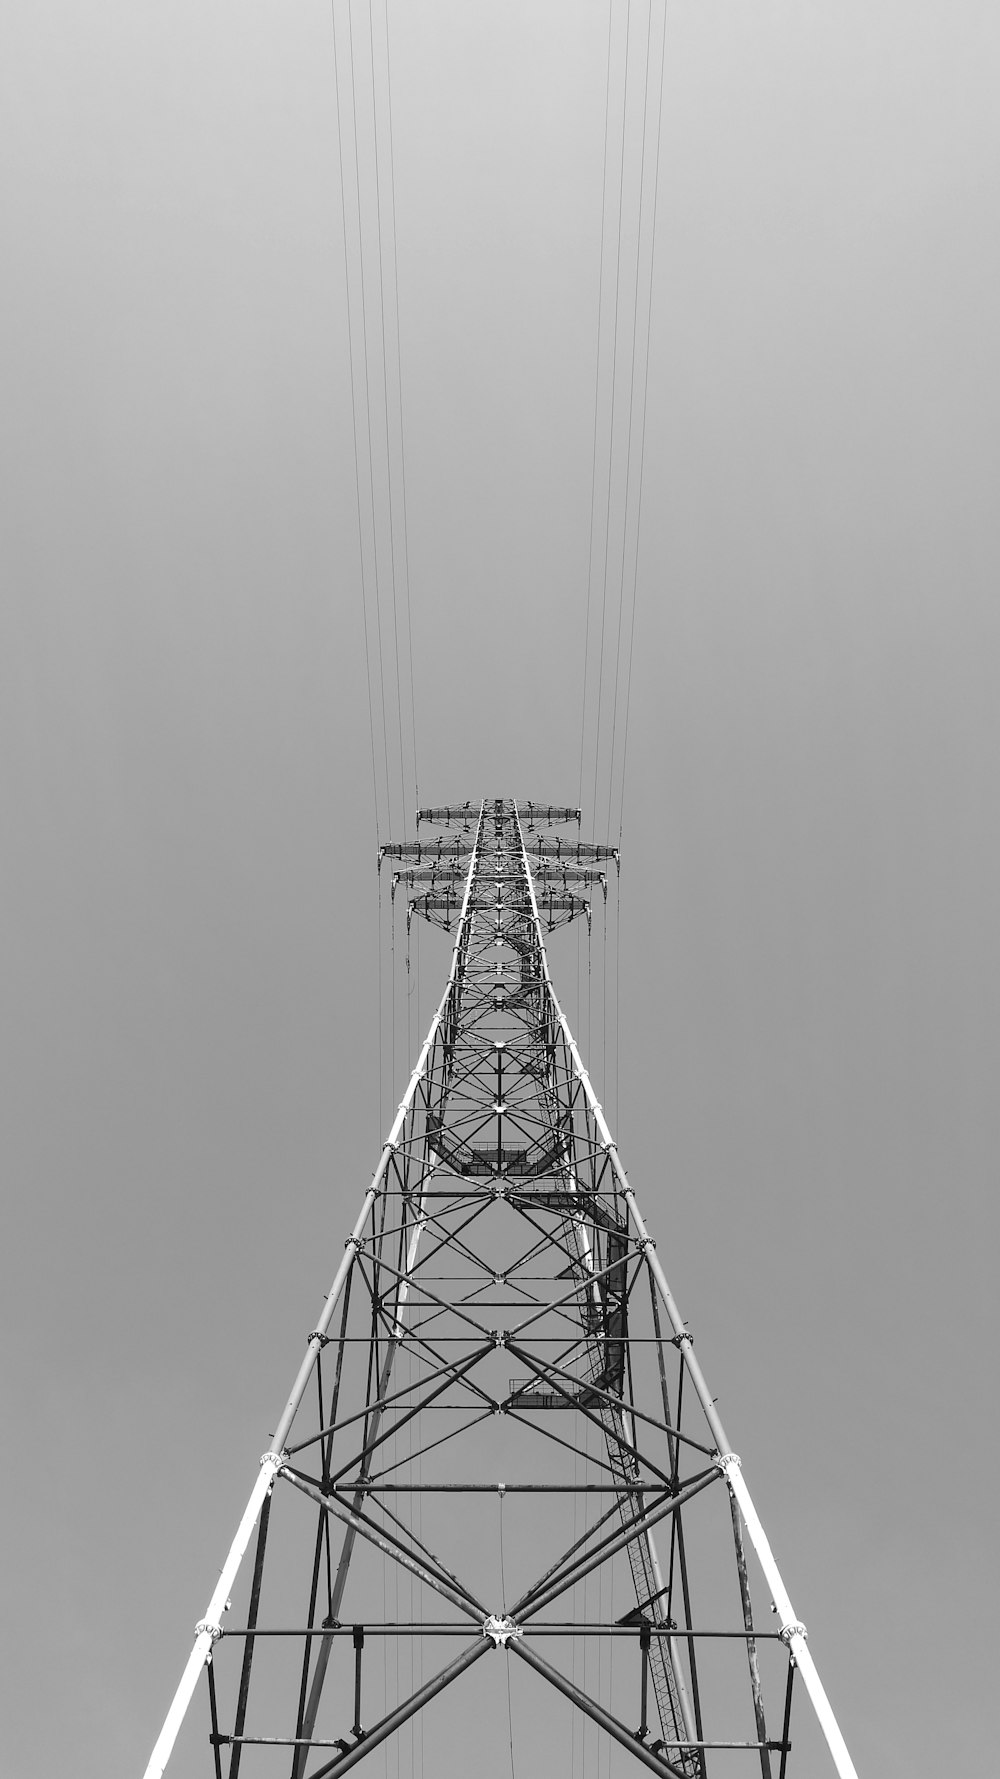 Photographie en niveaux de gris de la tour en métal